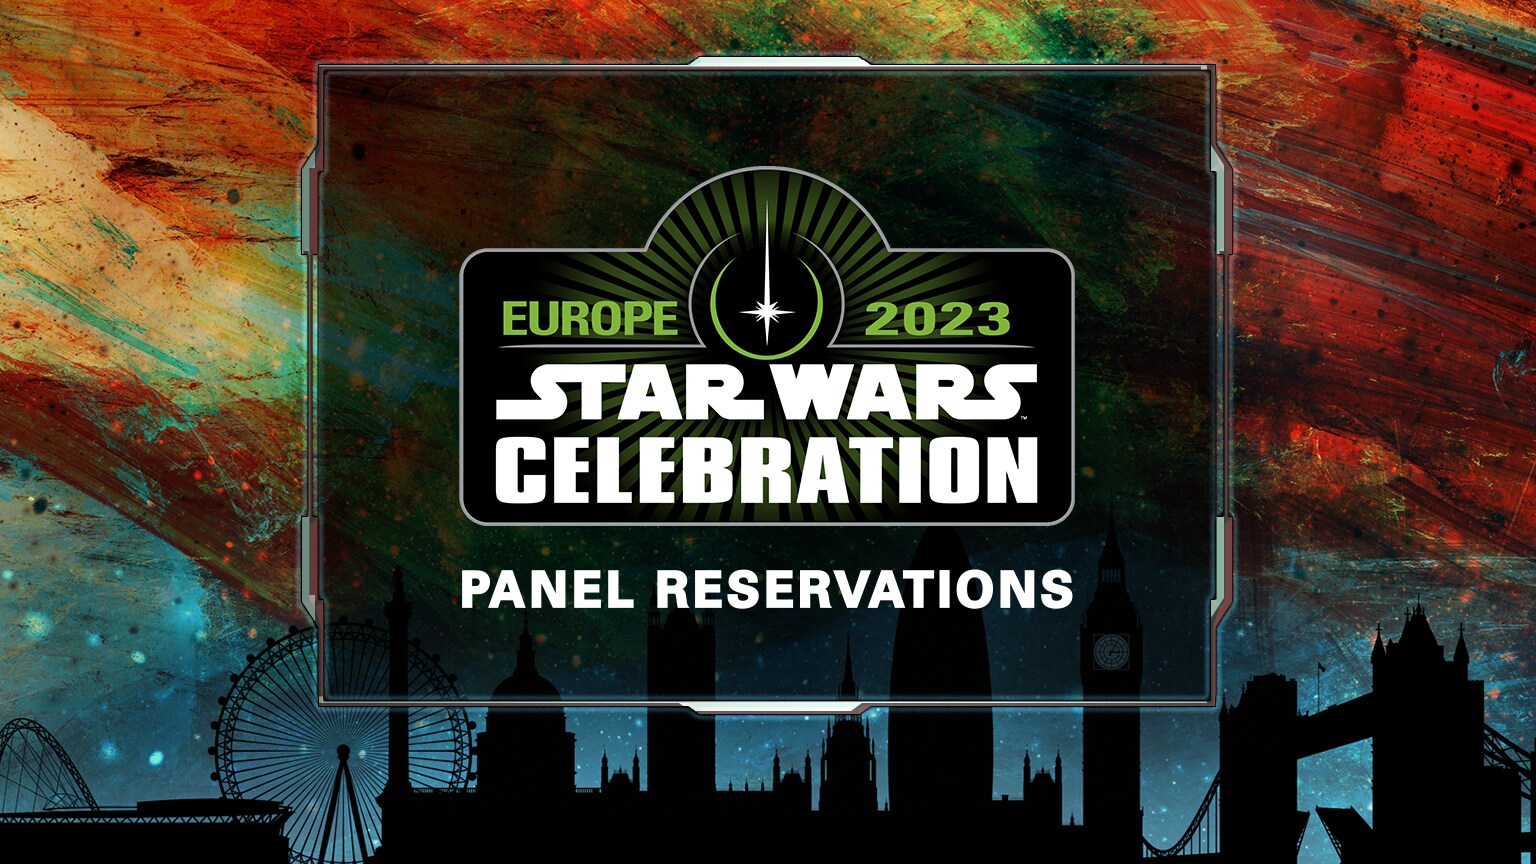 Star Wars Celebration Europe 2023 Panel Reservation Details